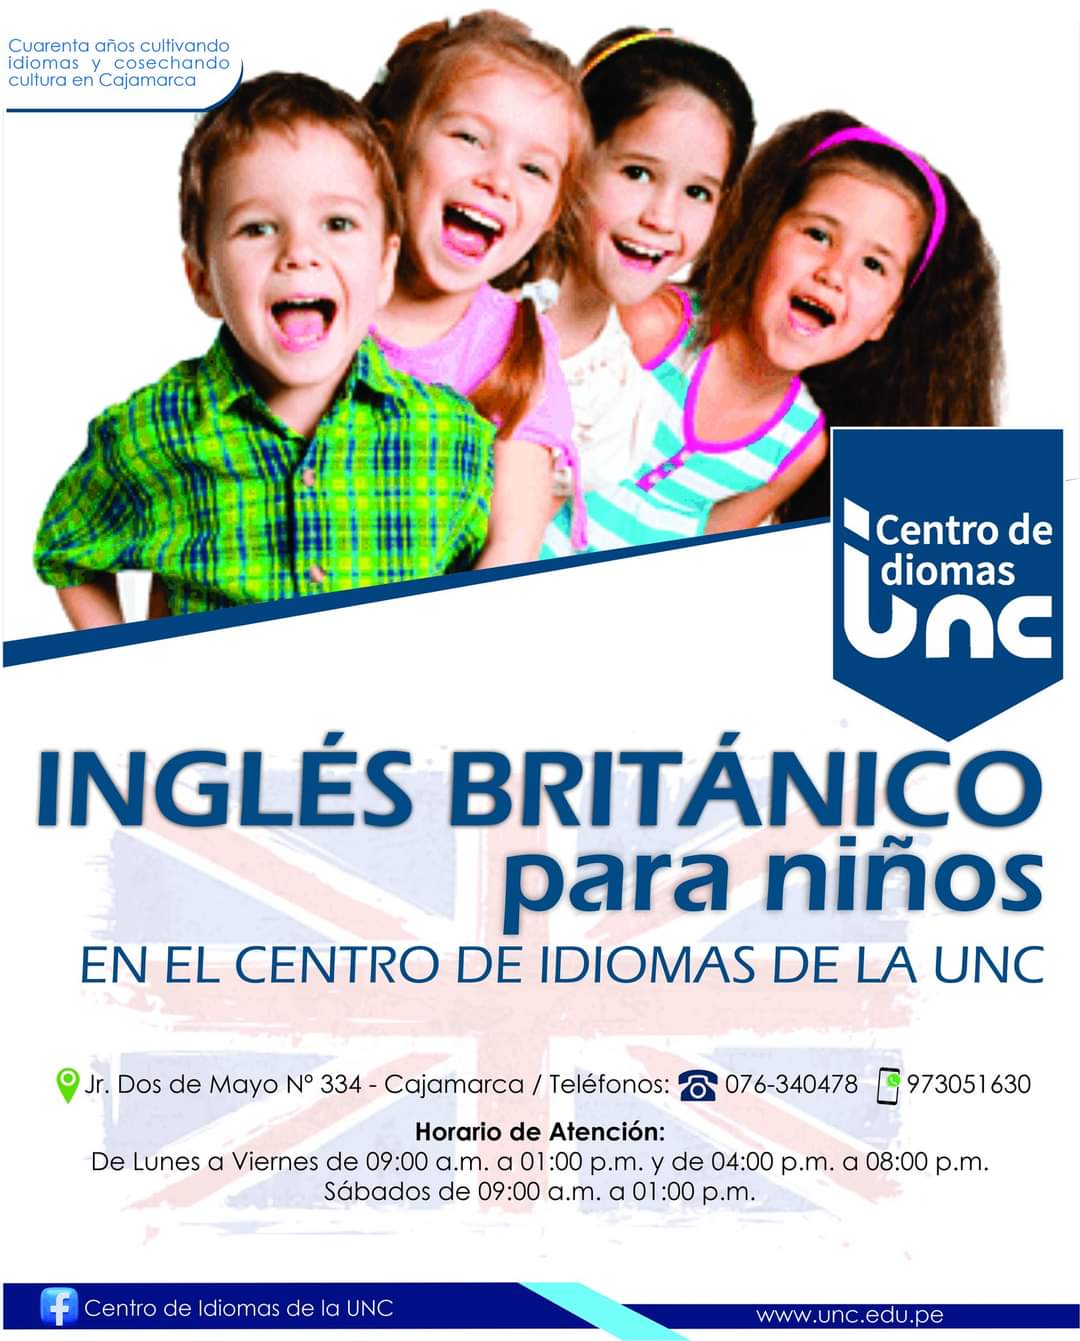 Centro de idiomas-Ingles britanico Niños